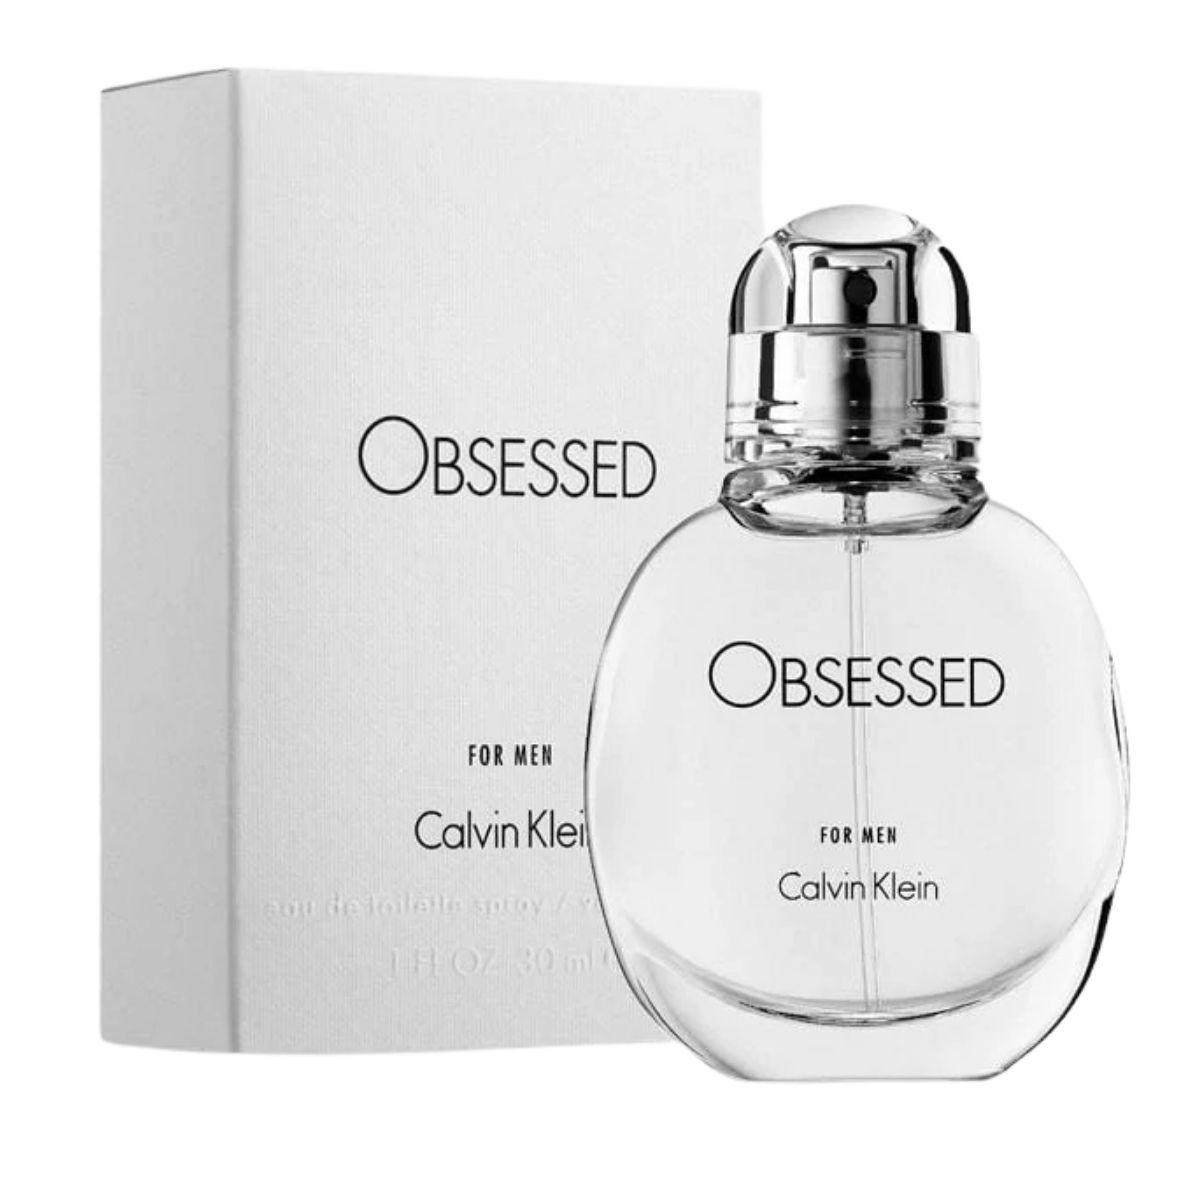 Buy Obsessed by Calvin Klein for Men EDT 100mL | Arablly.com